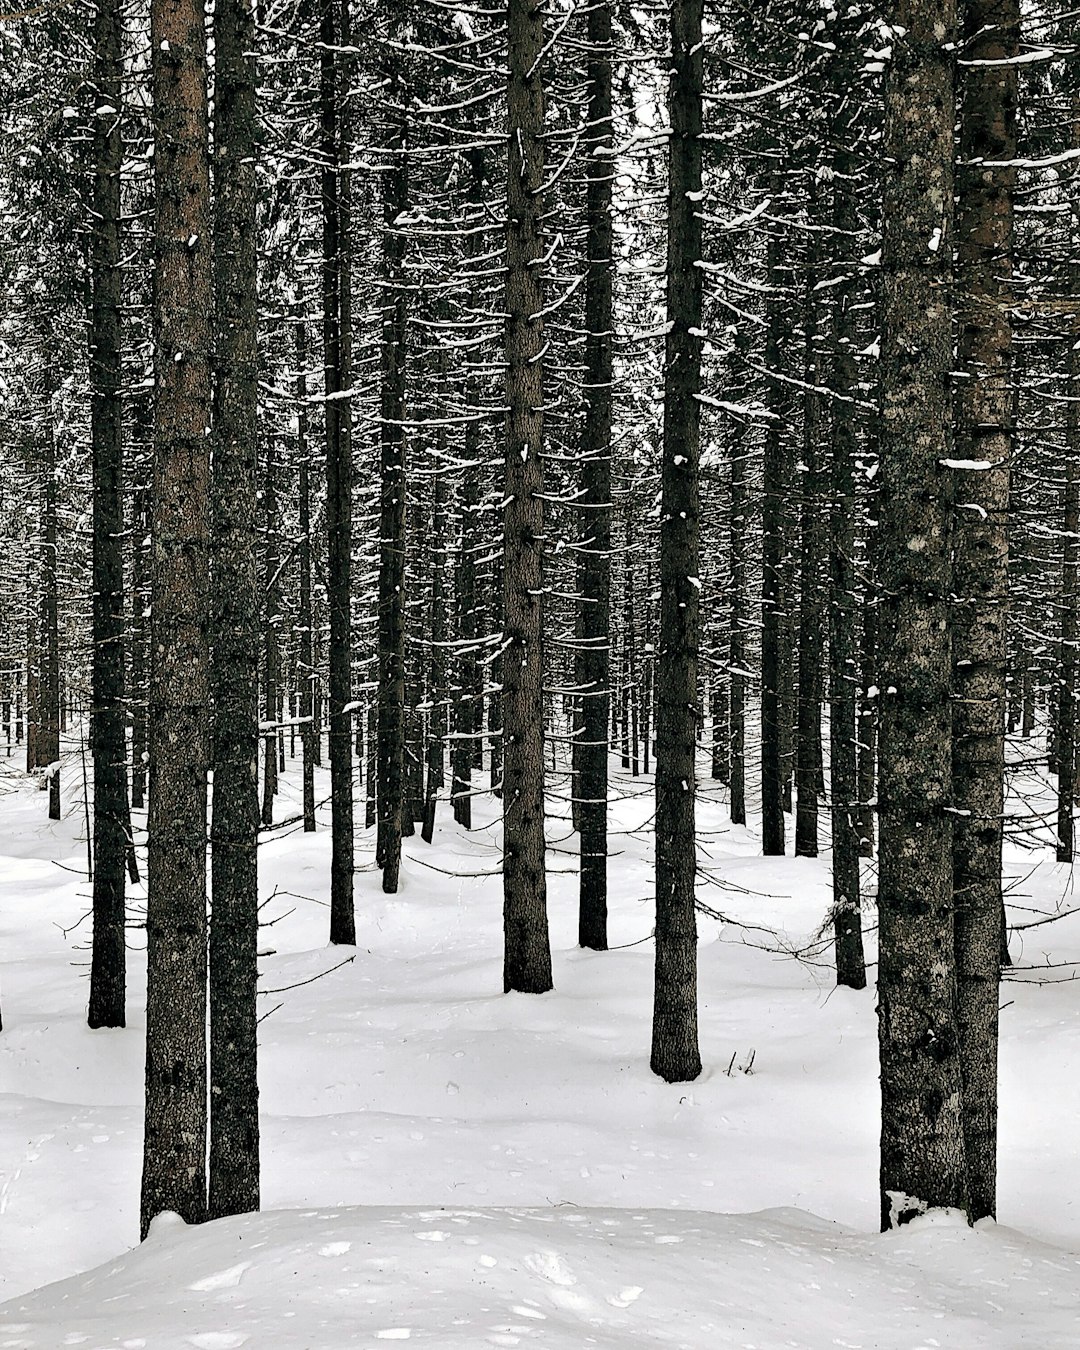 Spruce-fir forest photo spot Paneveggio - Pale di San Martino Dolomites